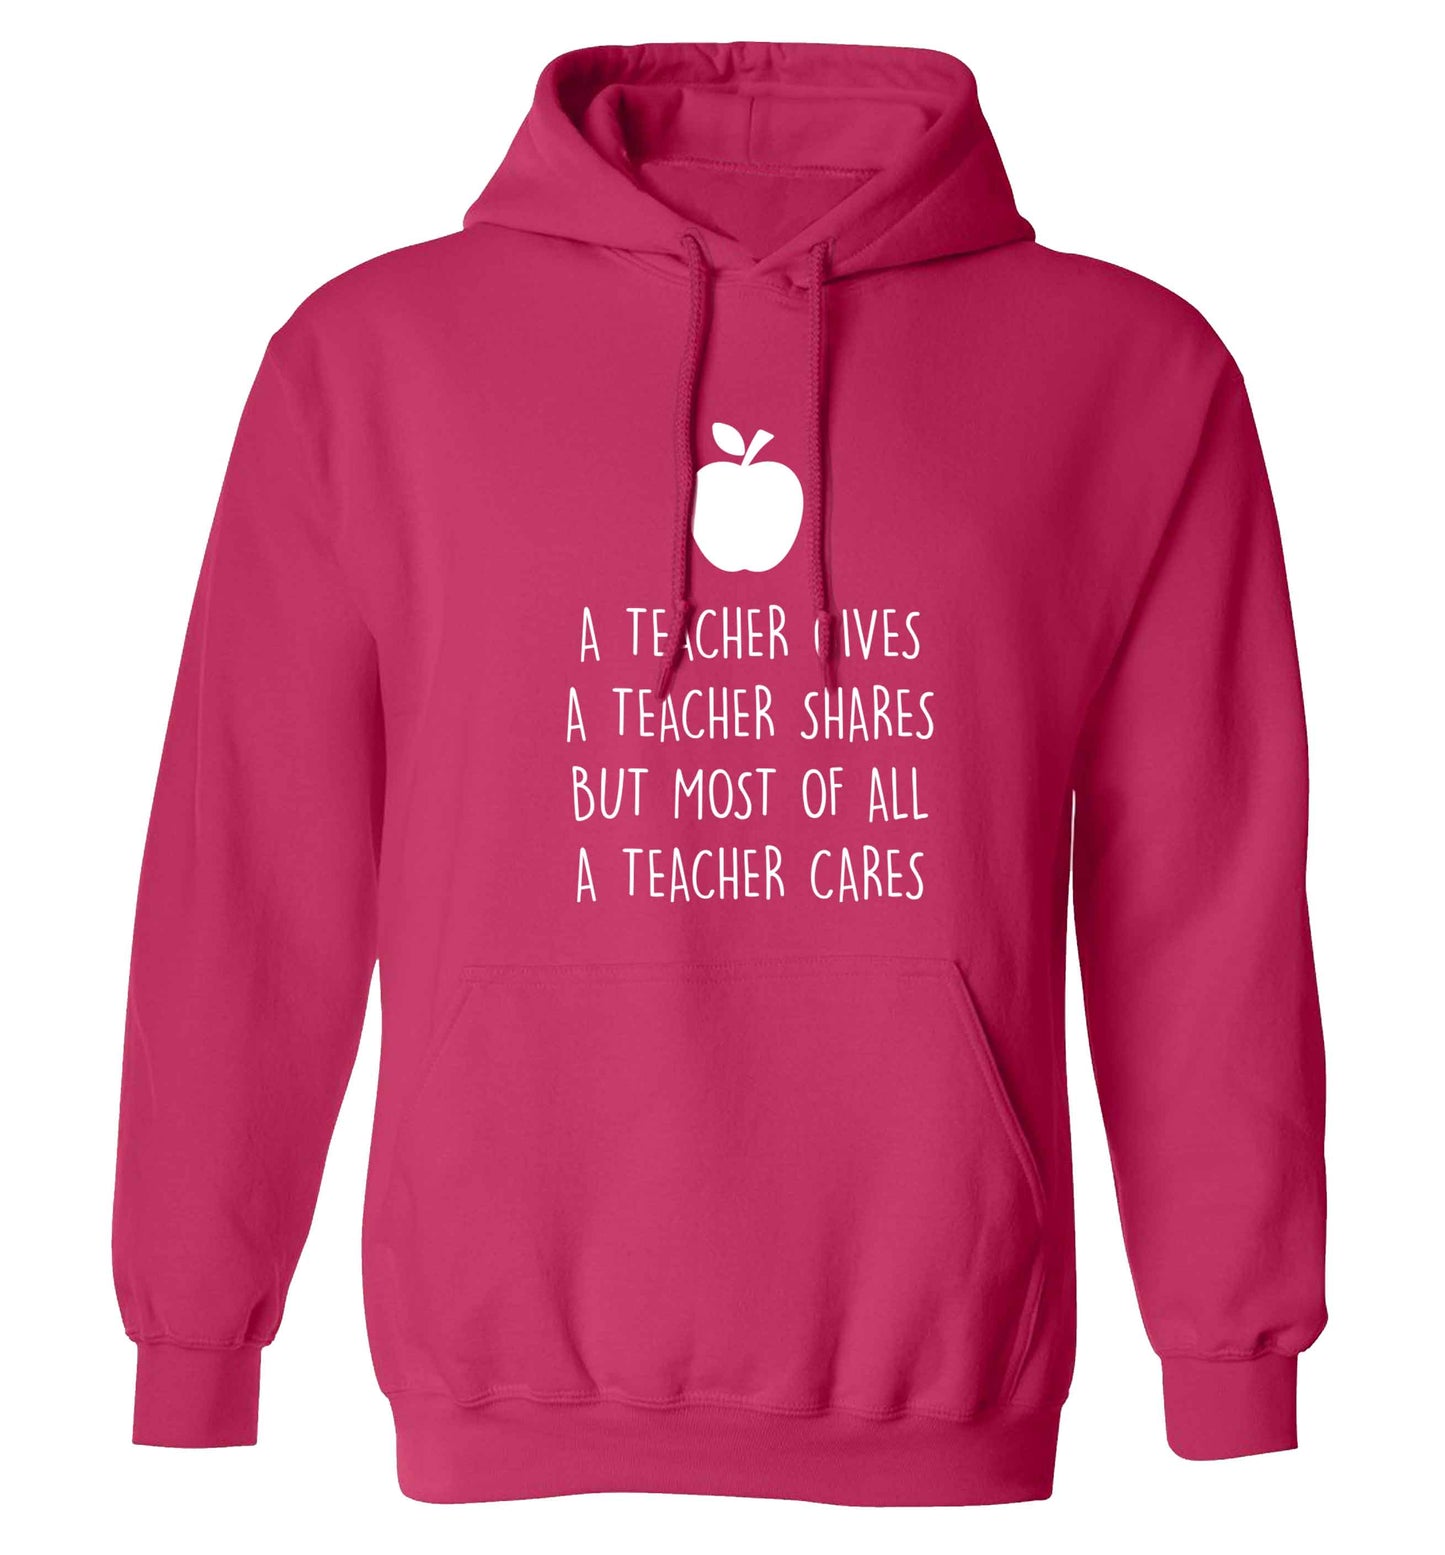 A teacher gives a teacher shares but most of all a teacher cares adults unisex pink hoodie 2XL